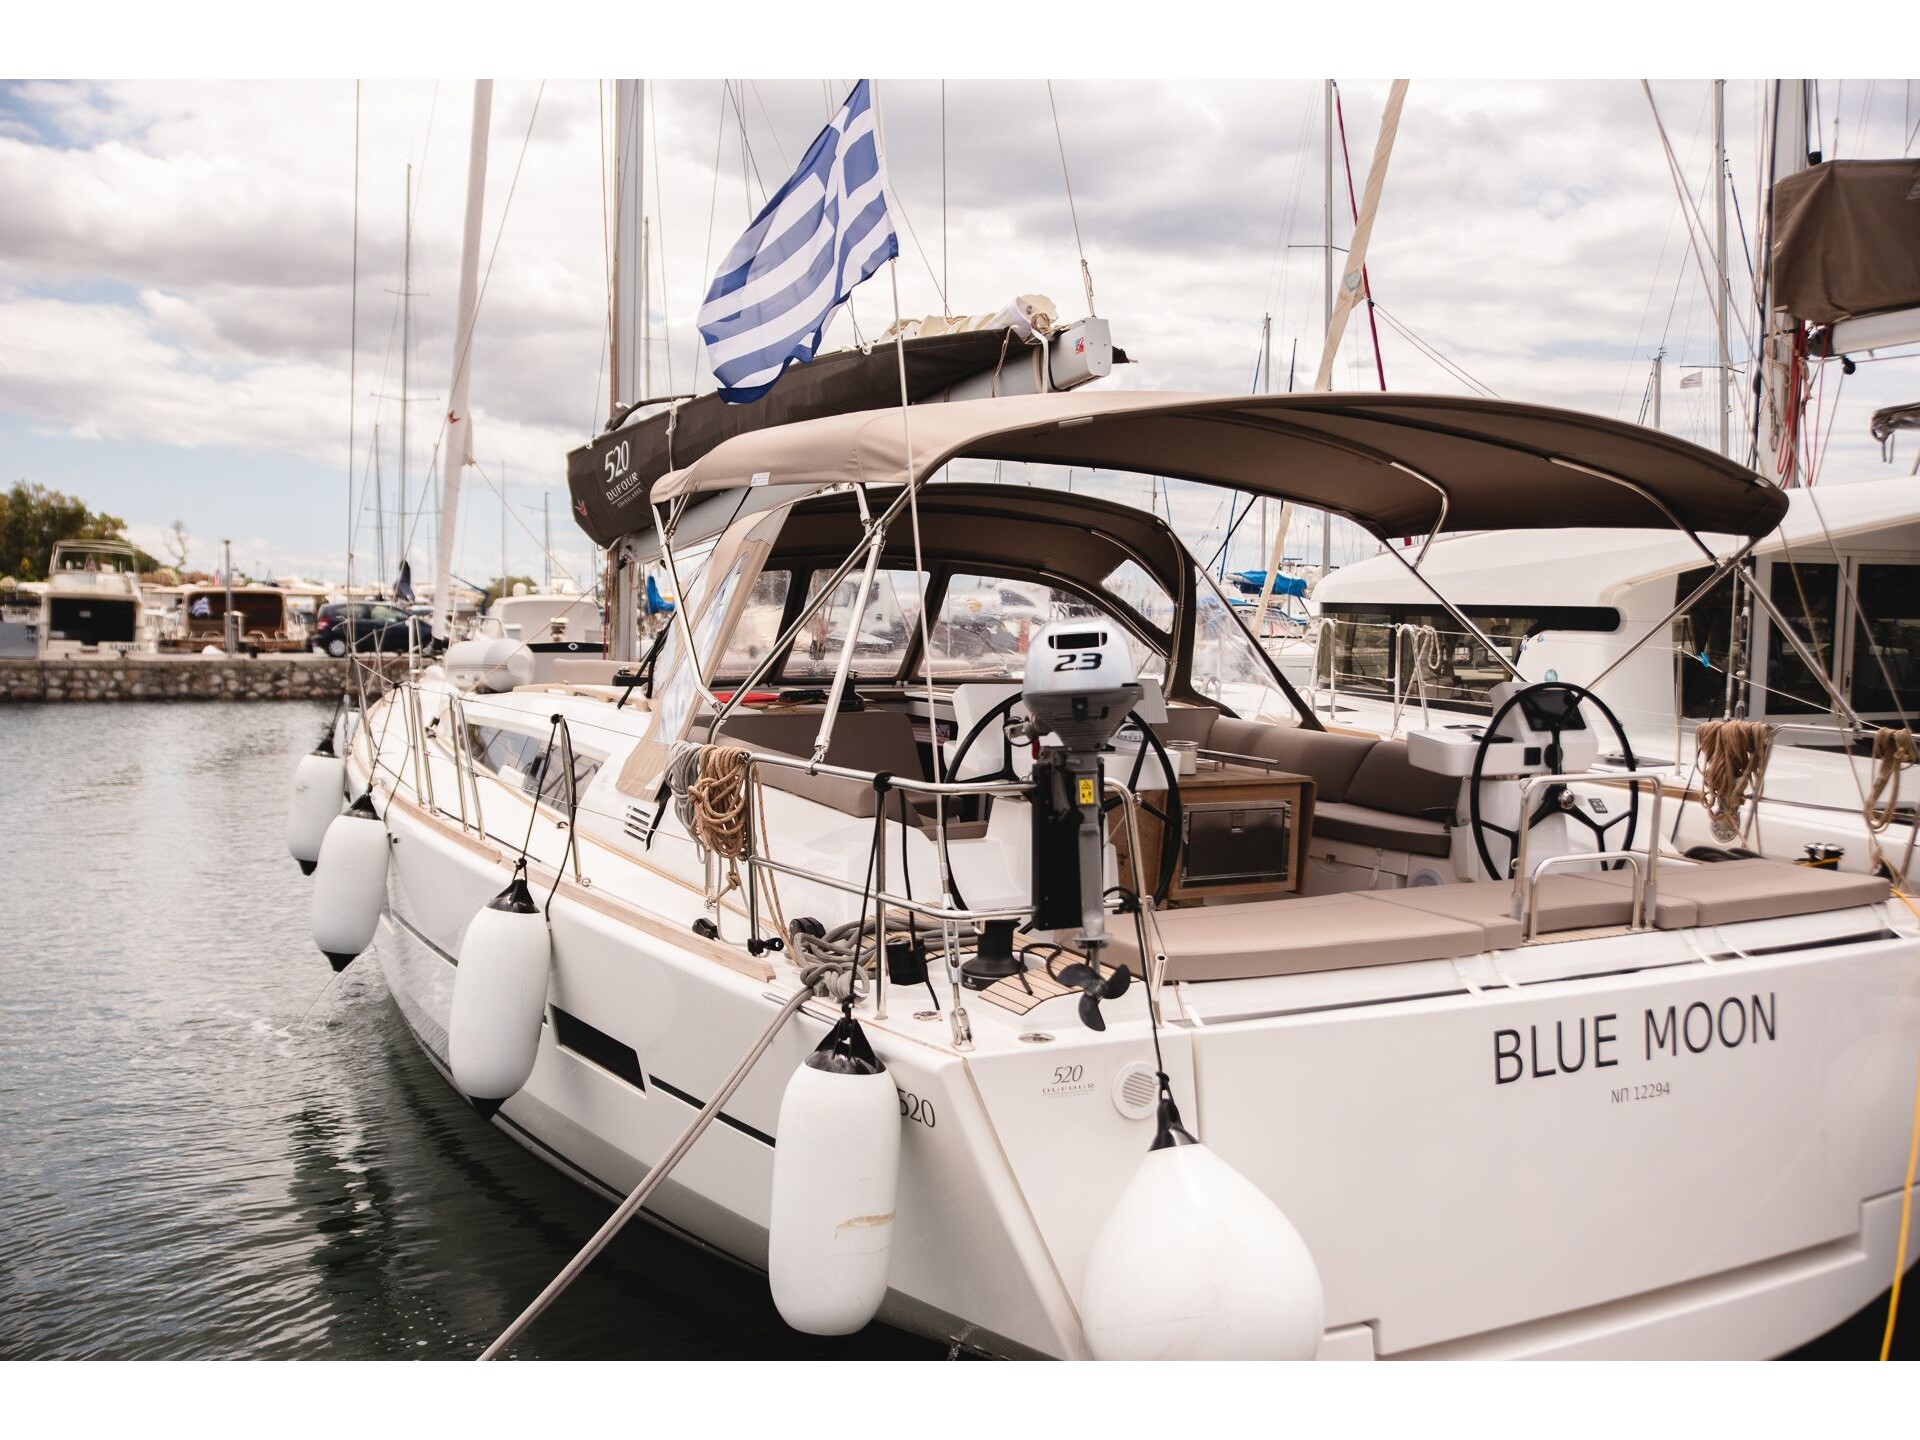 Dufour 520 Grand Large - Yacht Charter Preveza & Boat hire in Greece Ionian Sea South Ionian Lefkada Preveza Preveza Main Port 2